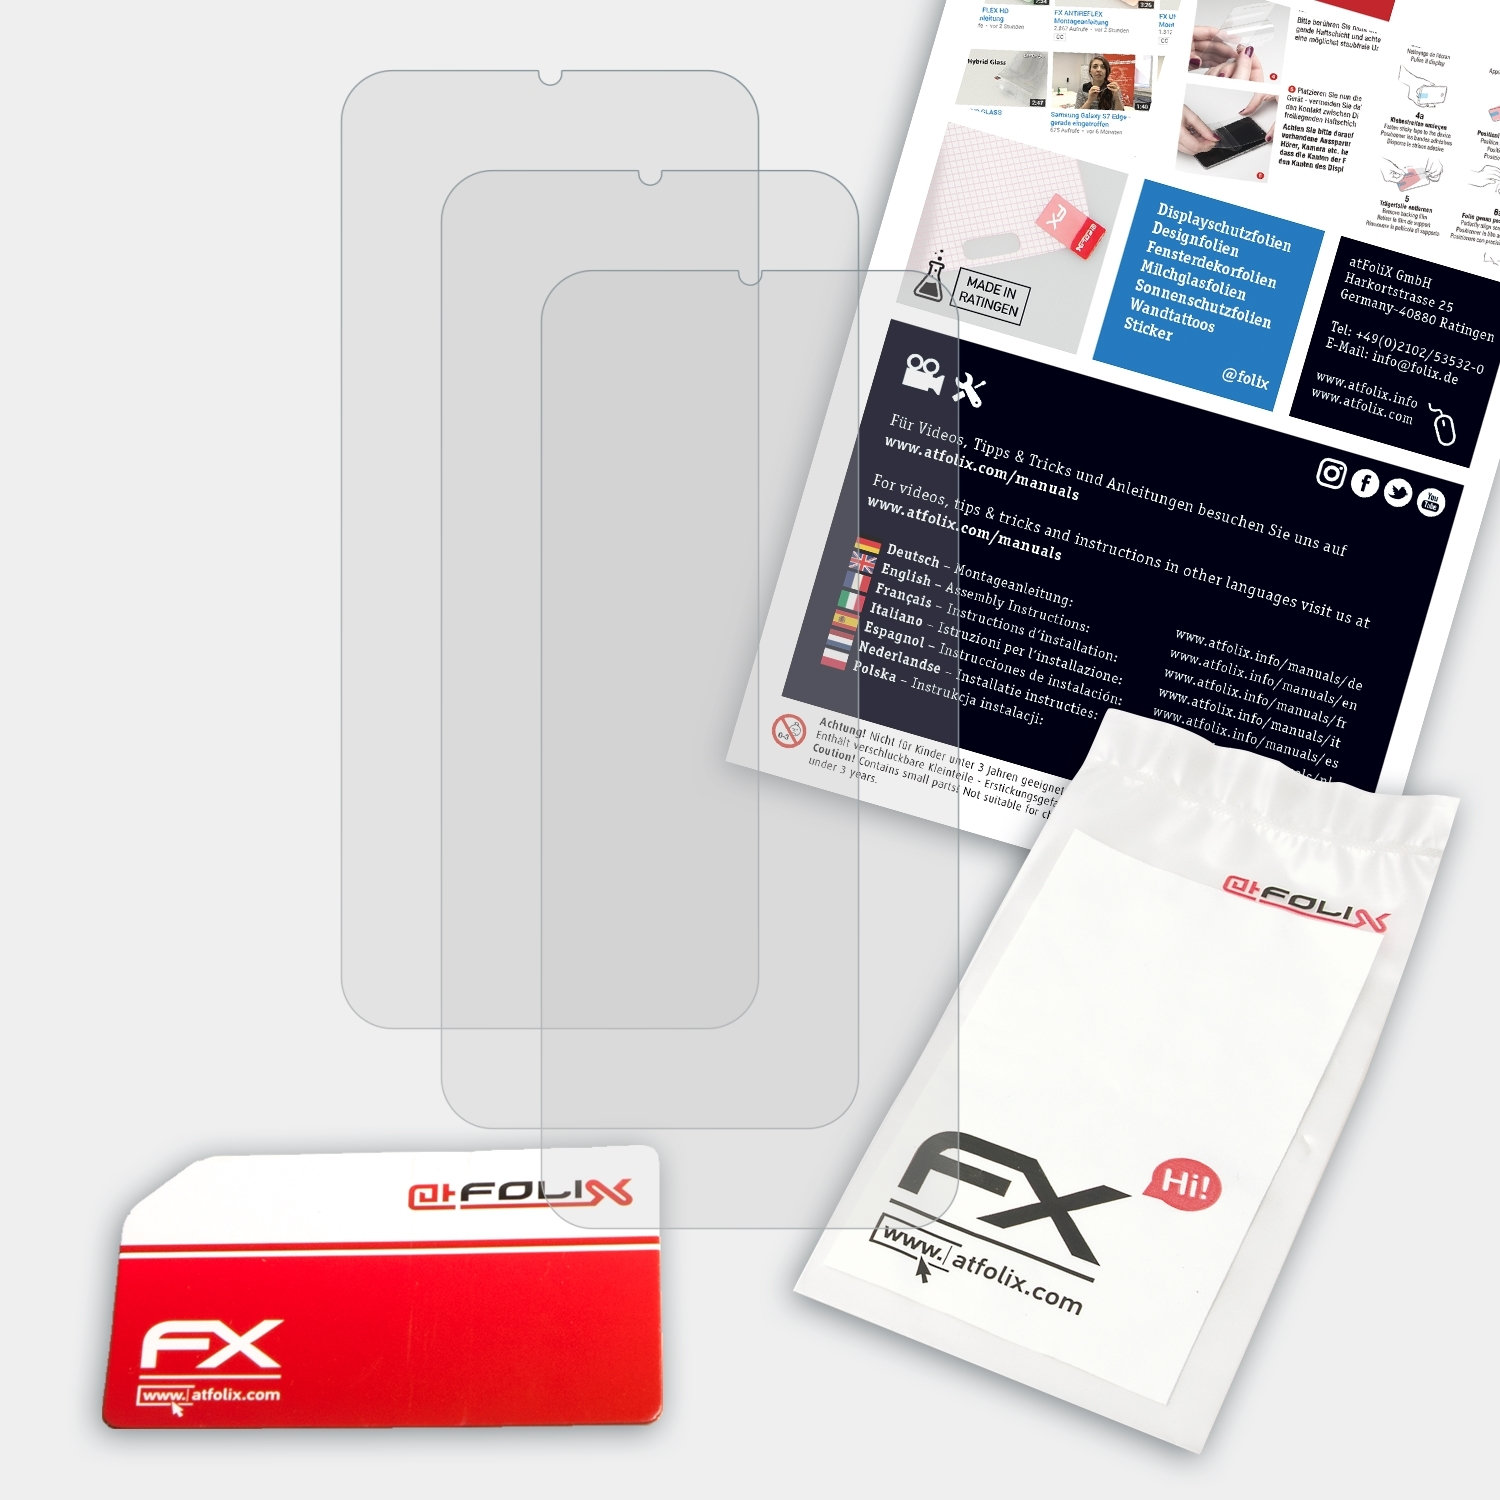 ATFOLIX 3x Displayschutz(für Realme Oppo FX-Antireflex 5 Pro)